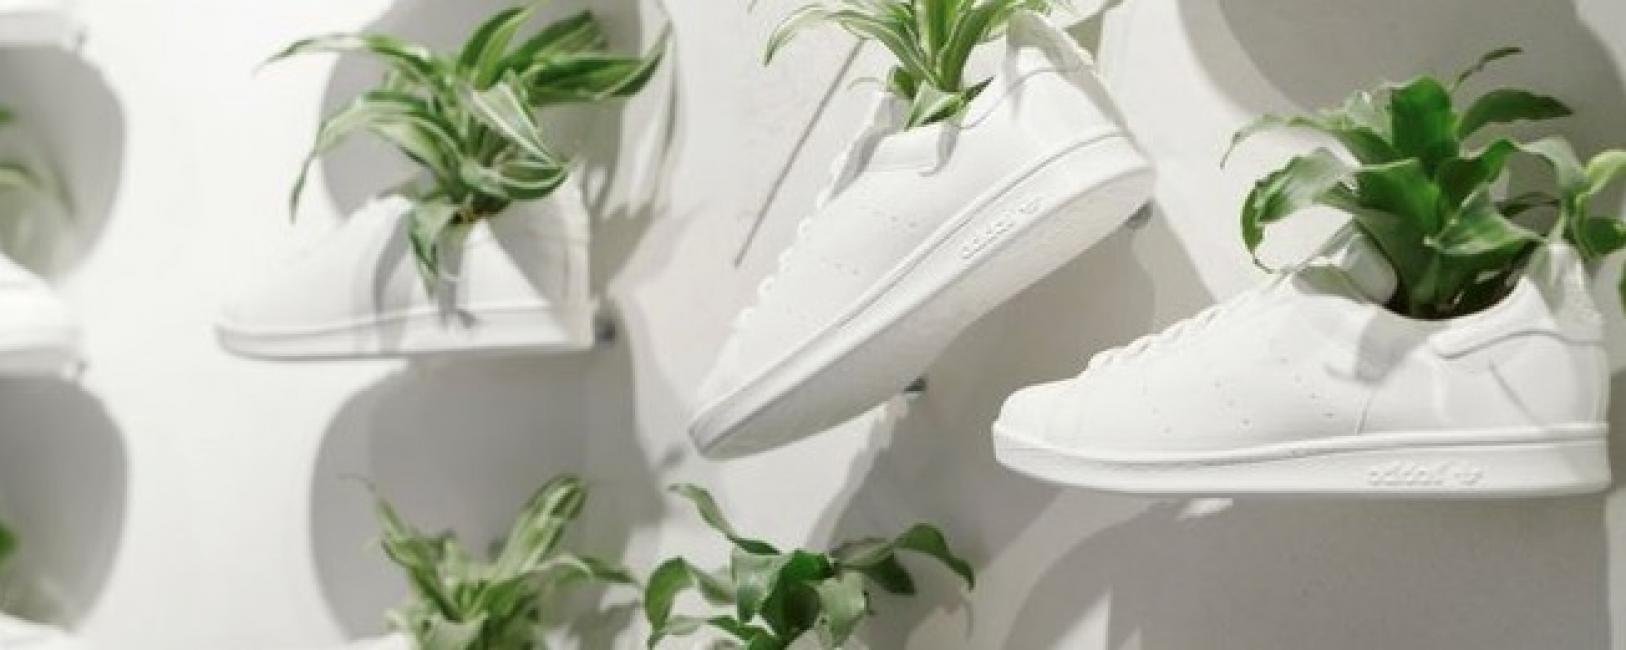 Adidas : 60% de produits fabriqués avec des matériaux durables en 2021